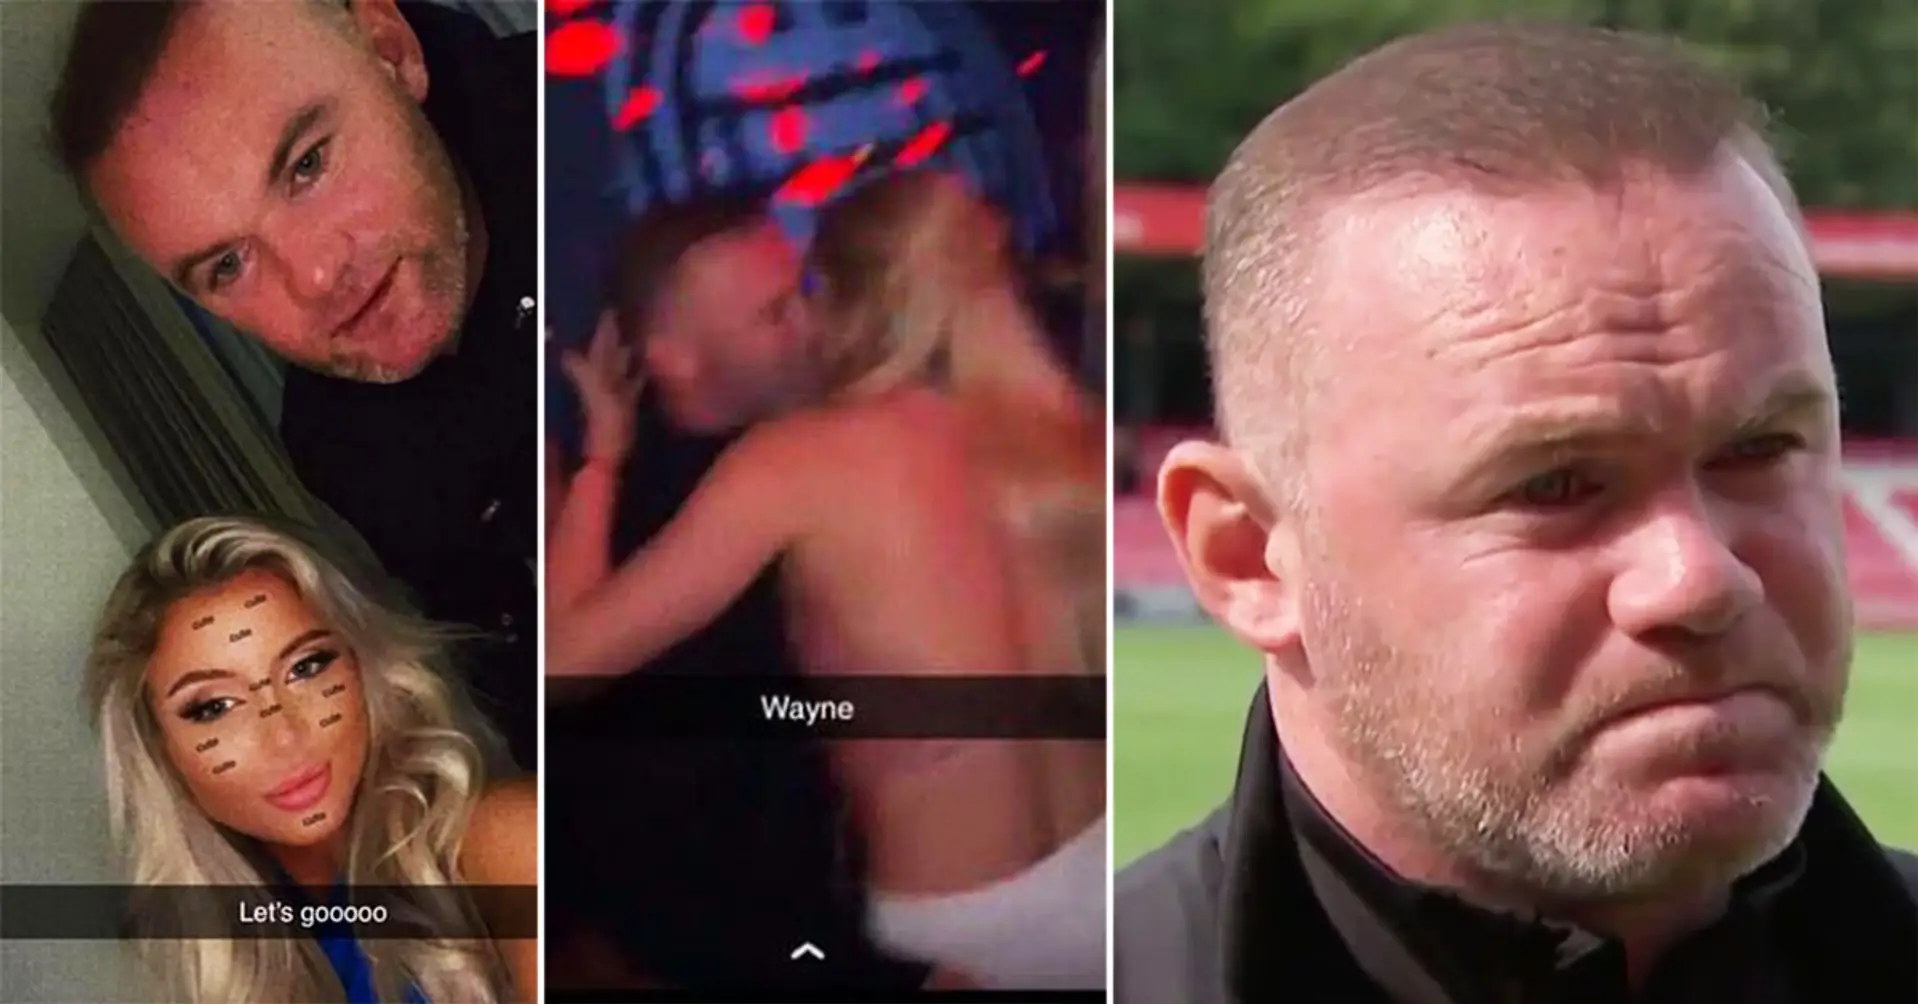 Wayne Rooney blesse son propre joueur, puis se fait prendre avec des mannequins dans une chambre d'hôtel